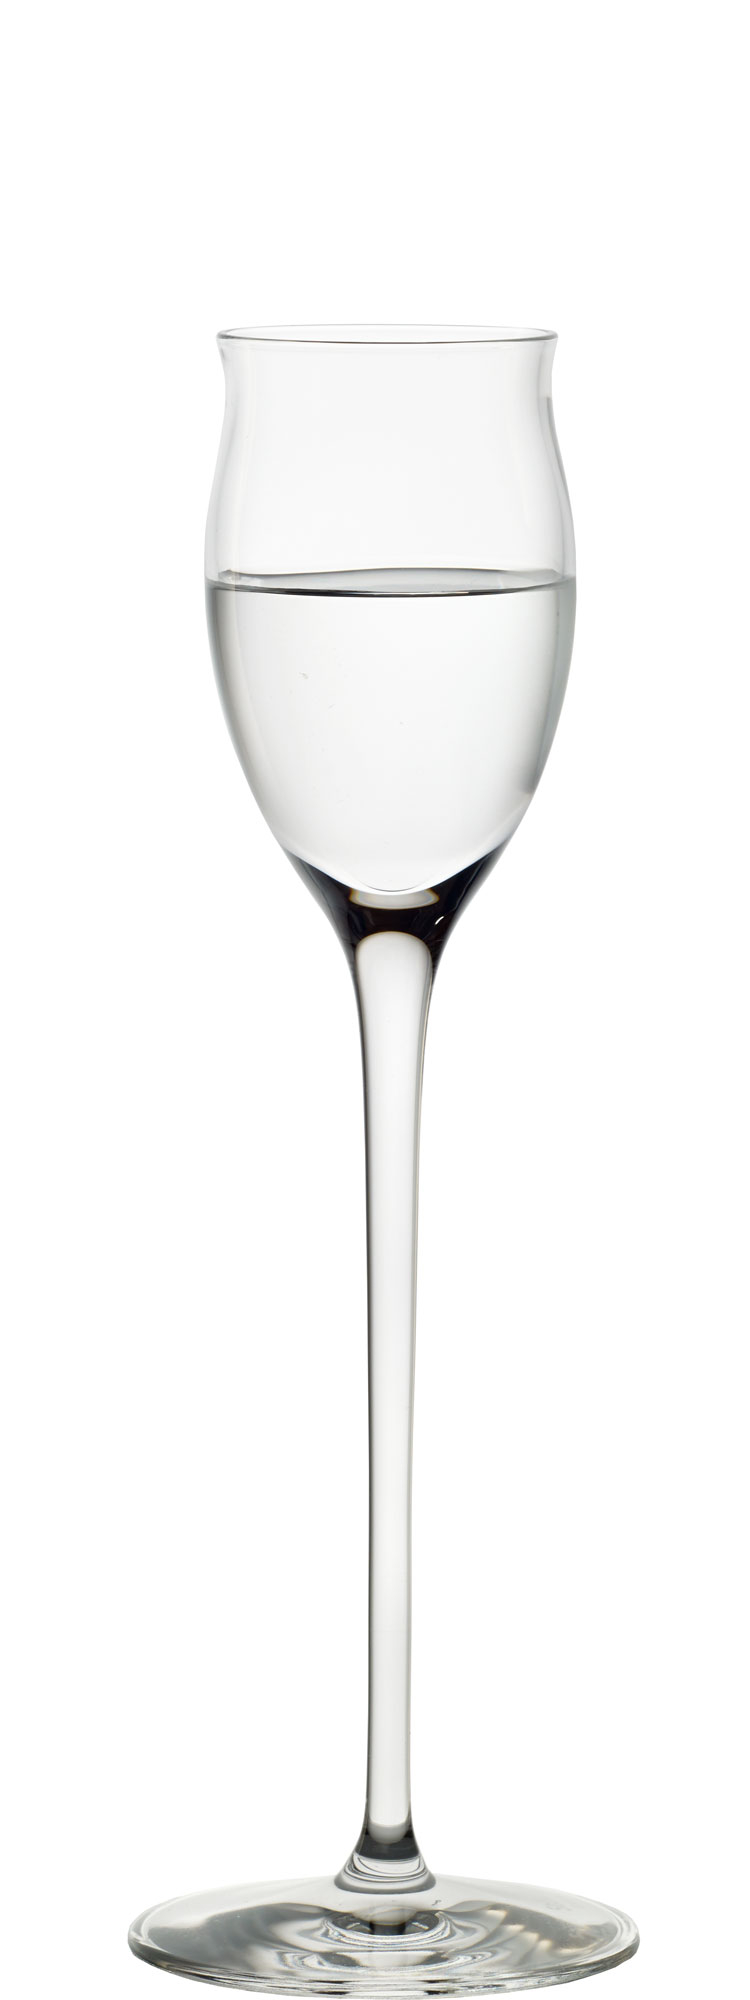 Edelbrand/Grappa Glas Quatrophil, Stölzle - 65ml (6 Stk.)